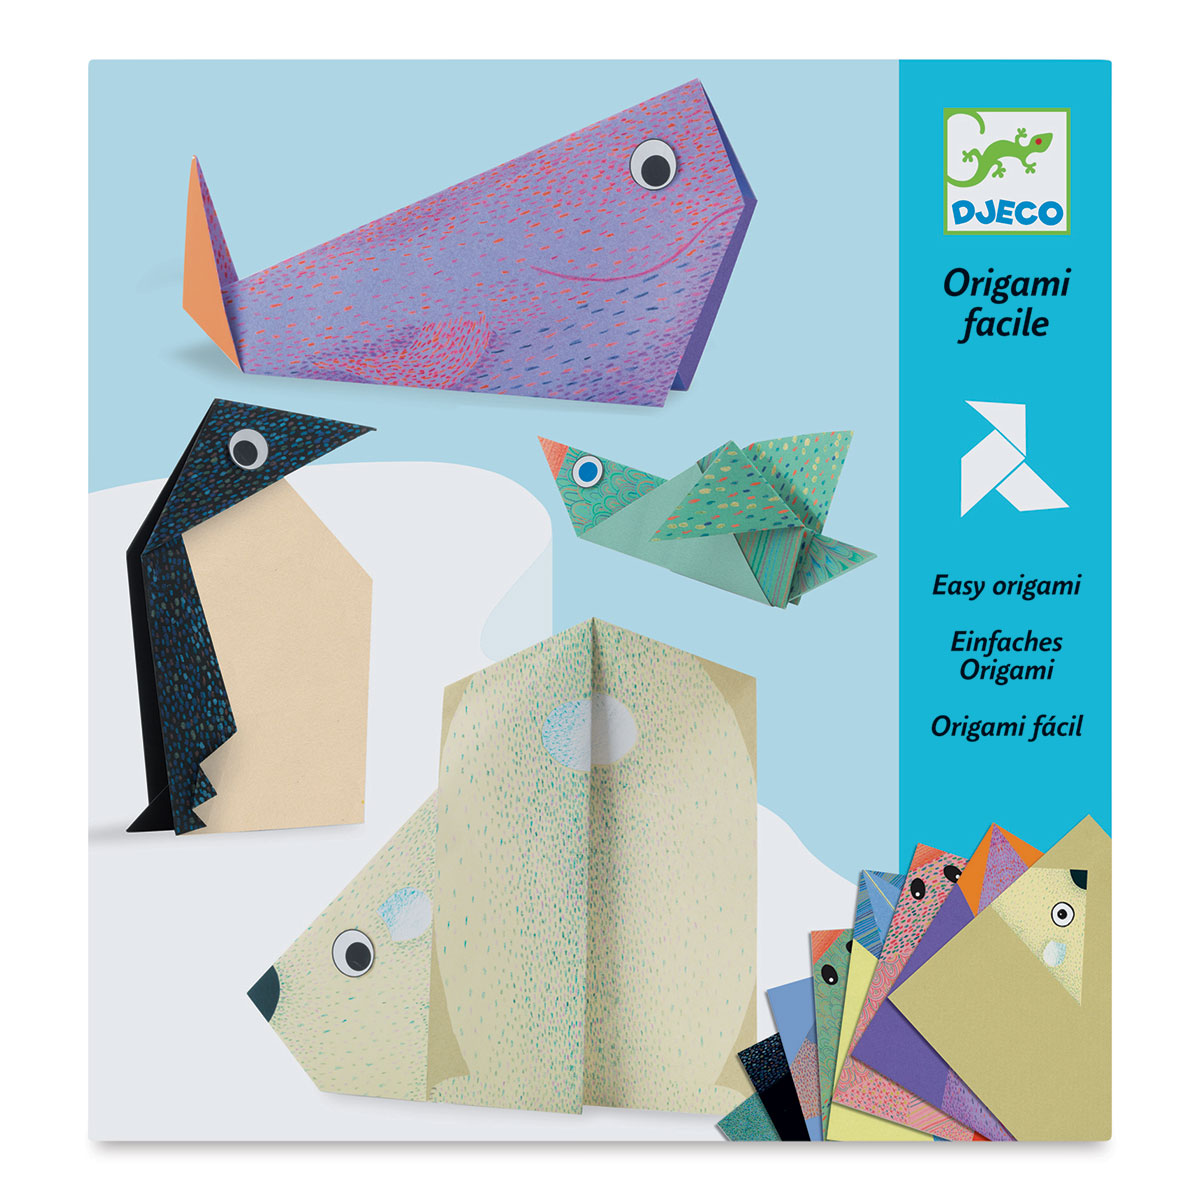 Papiroflexia Origami iniciación Djeco 599386031 